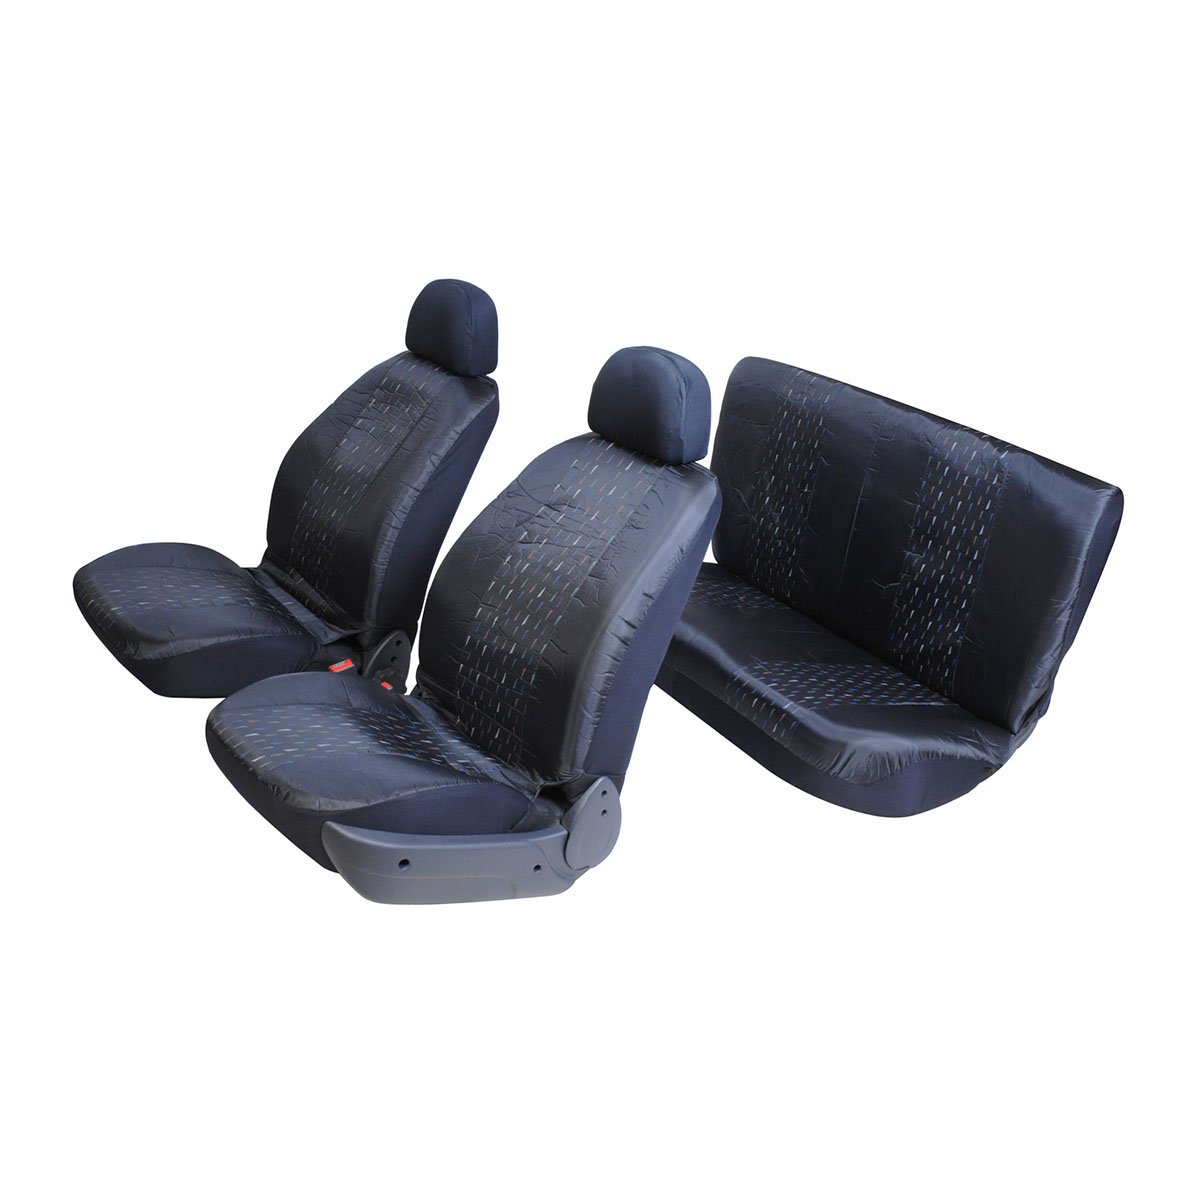 Leader Accessories Auto 2 Capas de couro pretas para assentos de